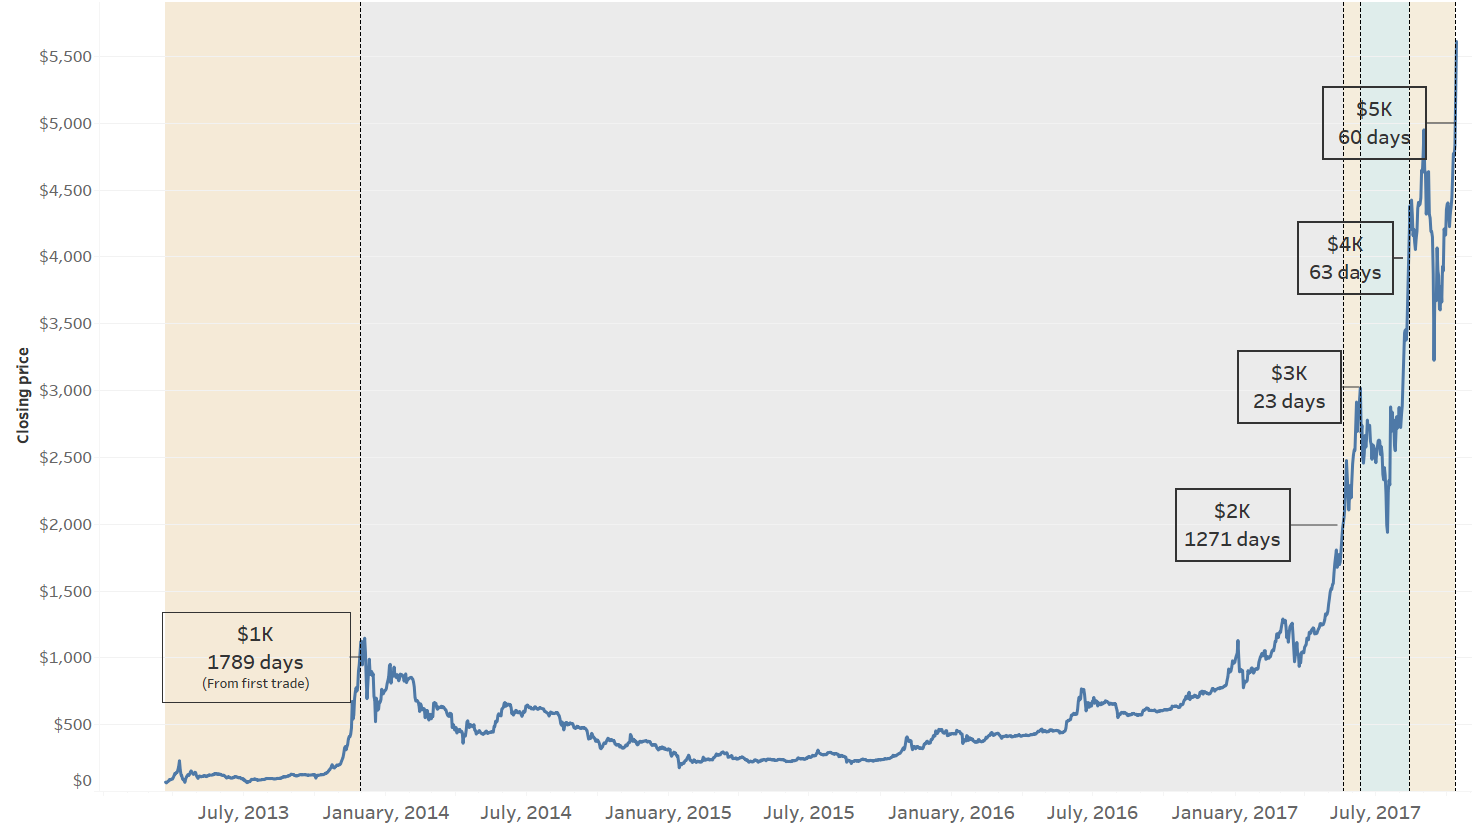 Bitcoin Growth Chart